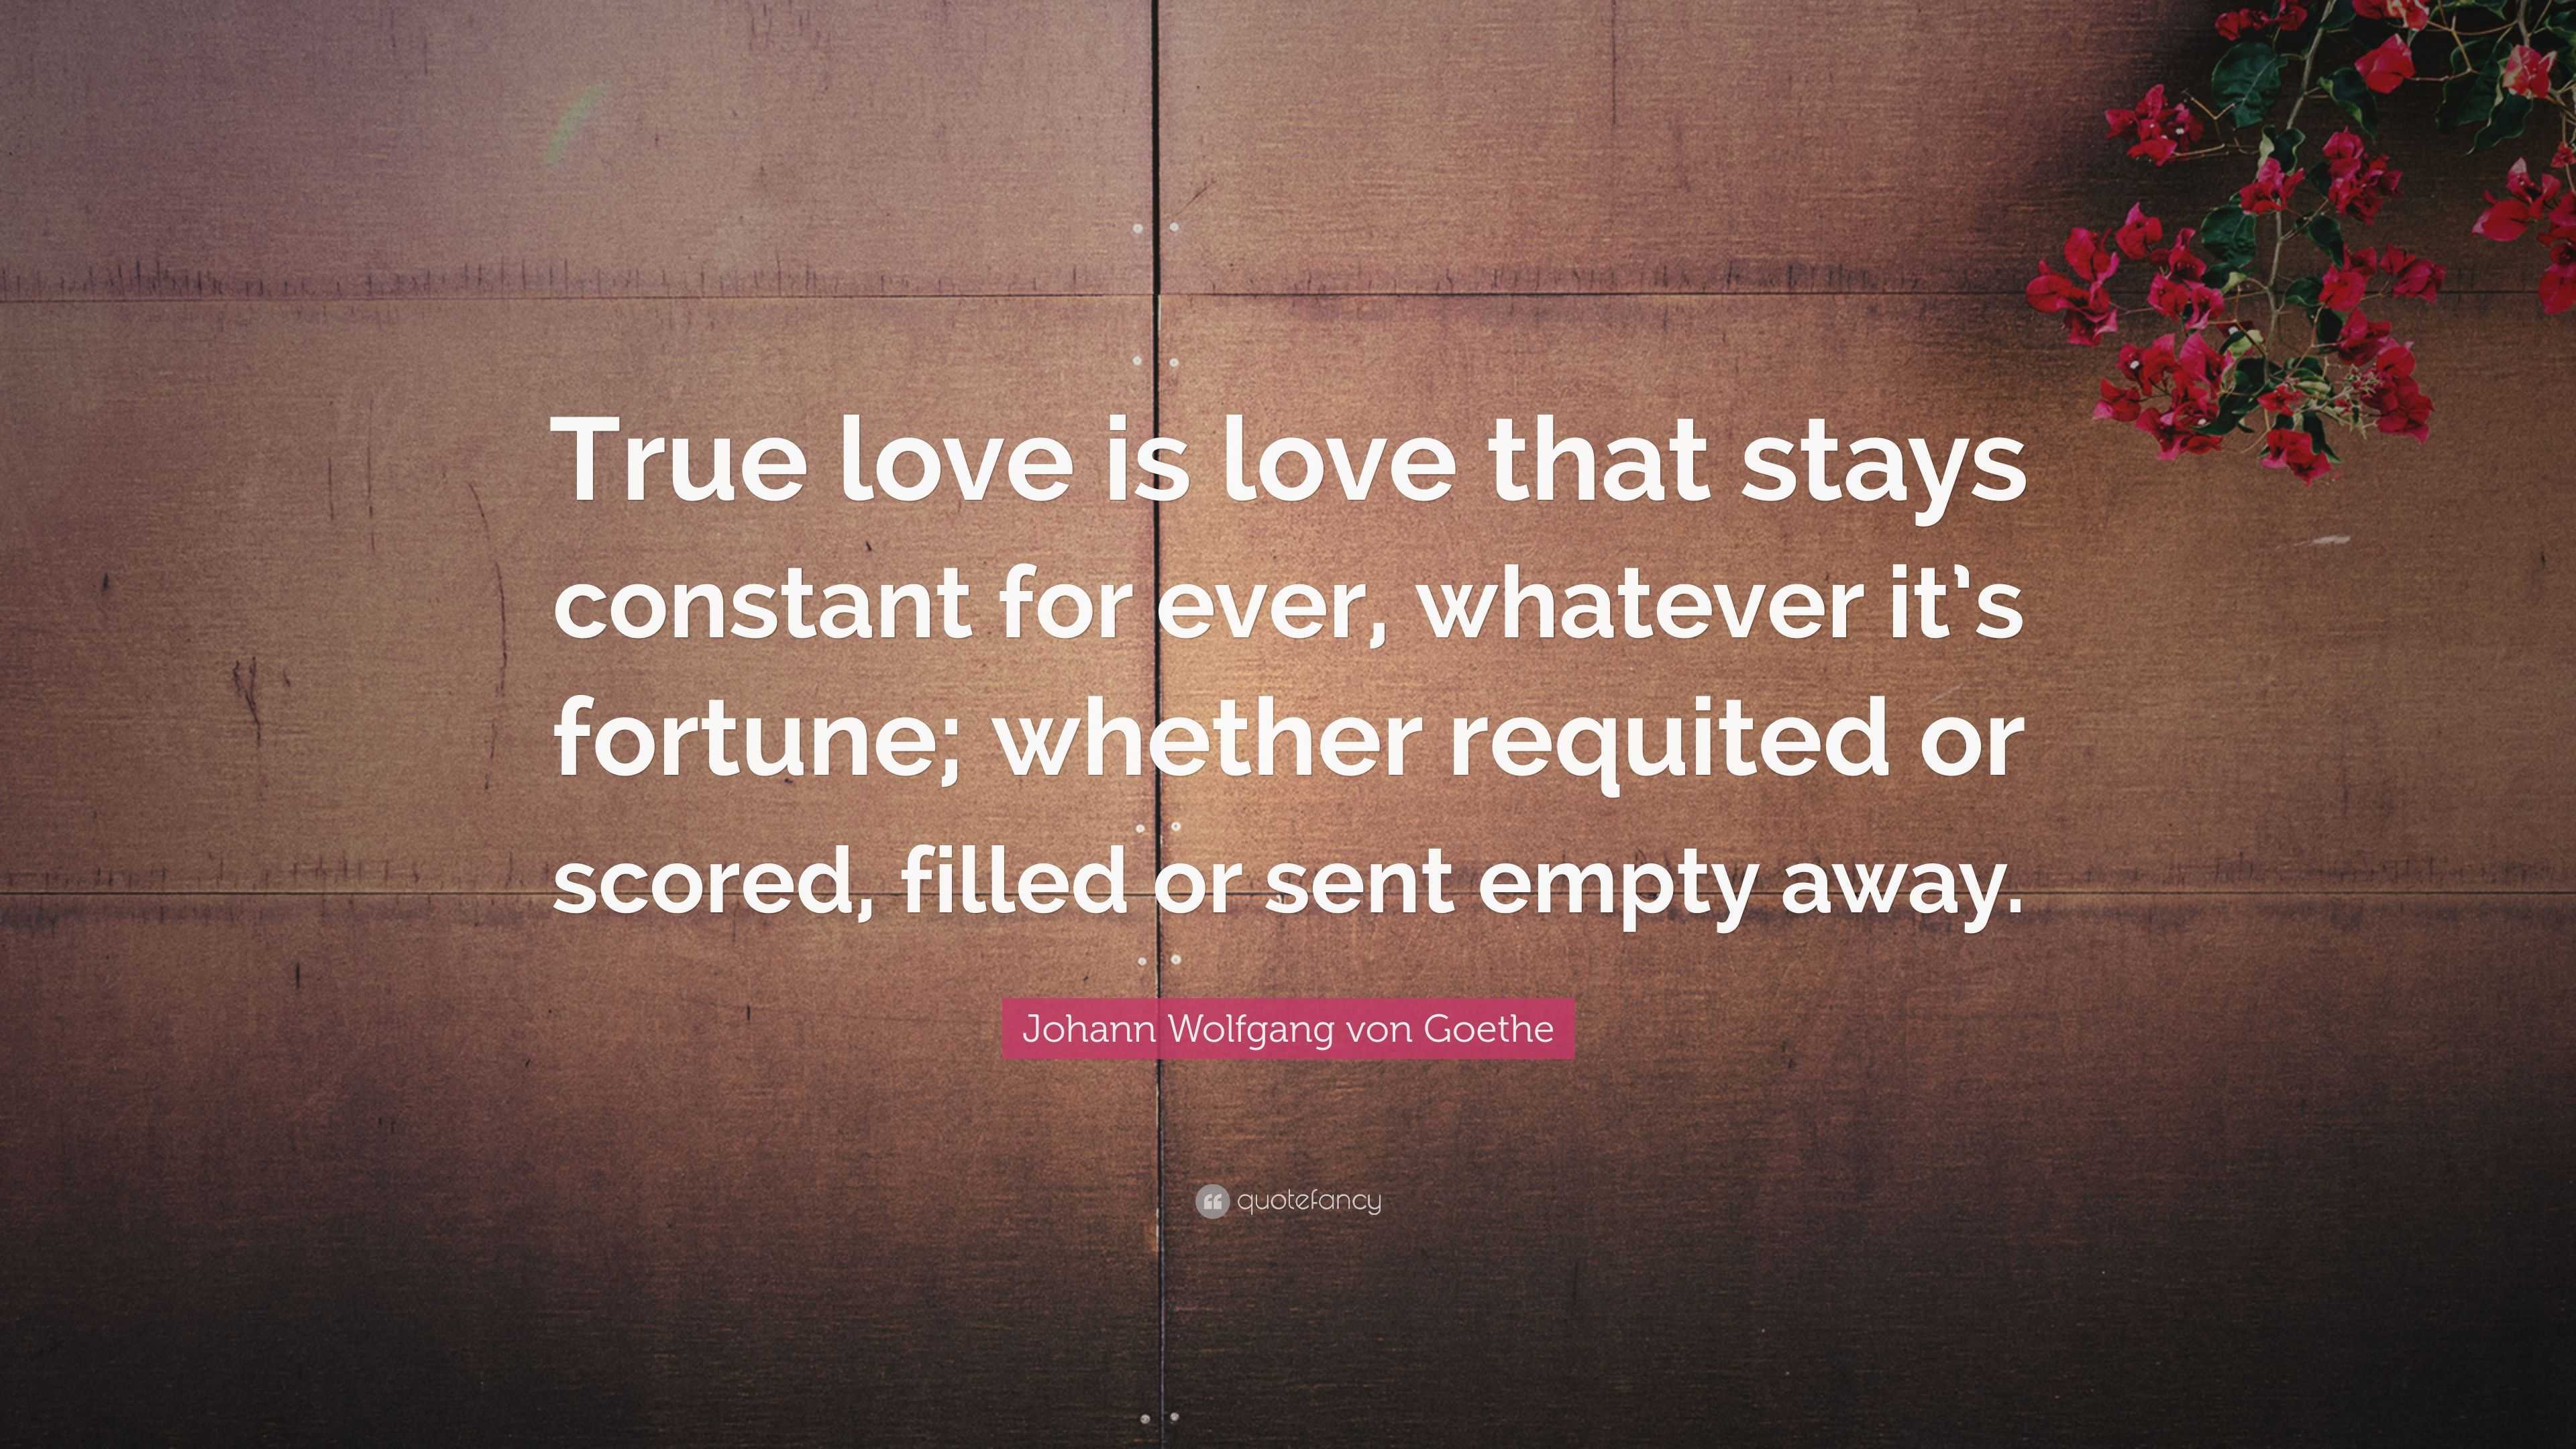 Johann Wolfgang von Goethe Quote “True love is love that stays